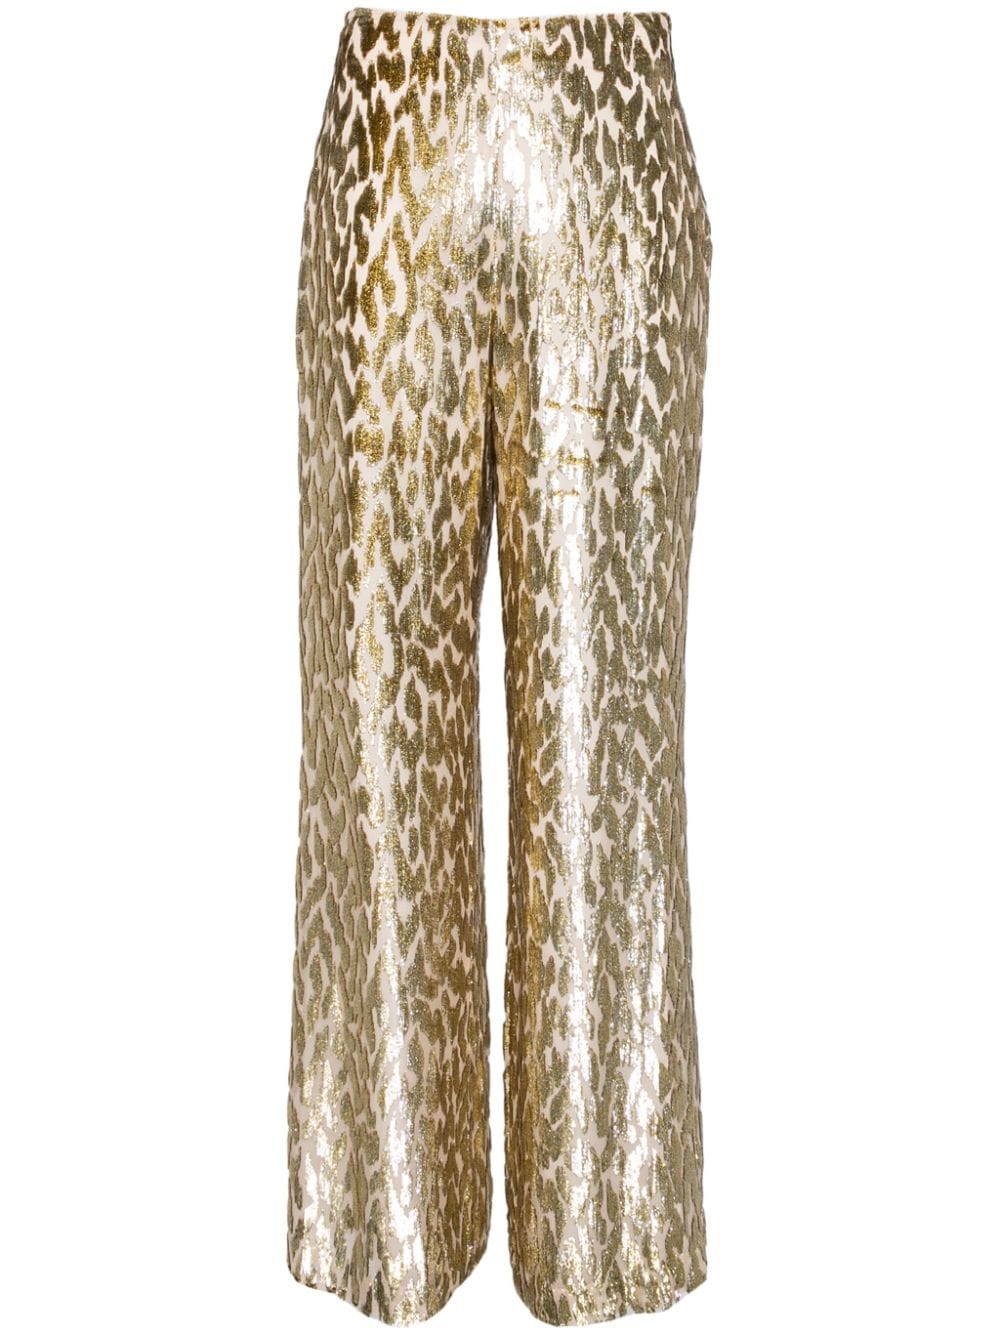 Simkhai shivon wide-leg trousers - Gold von Simkhai